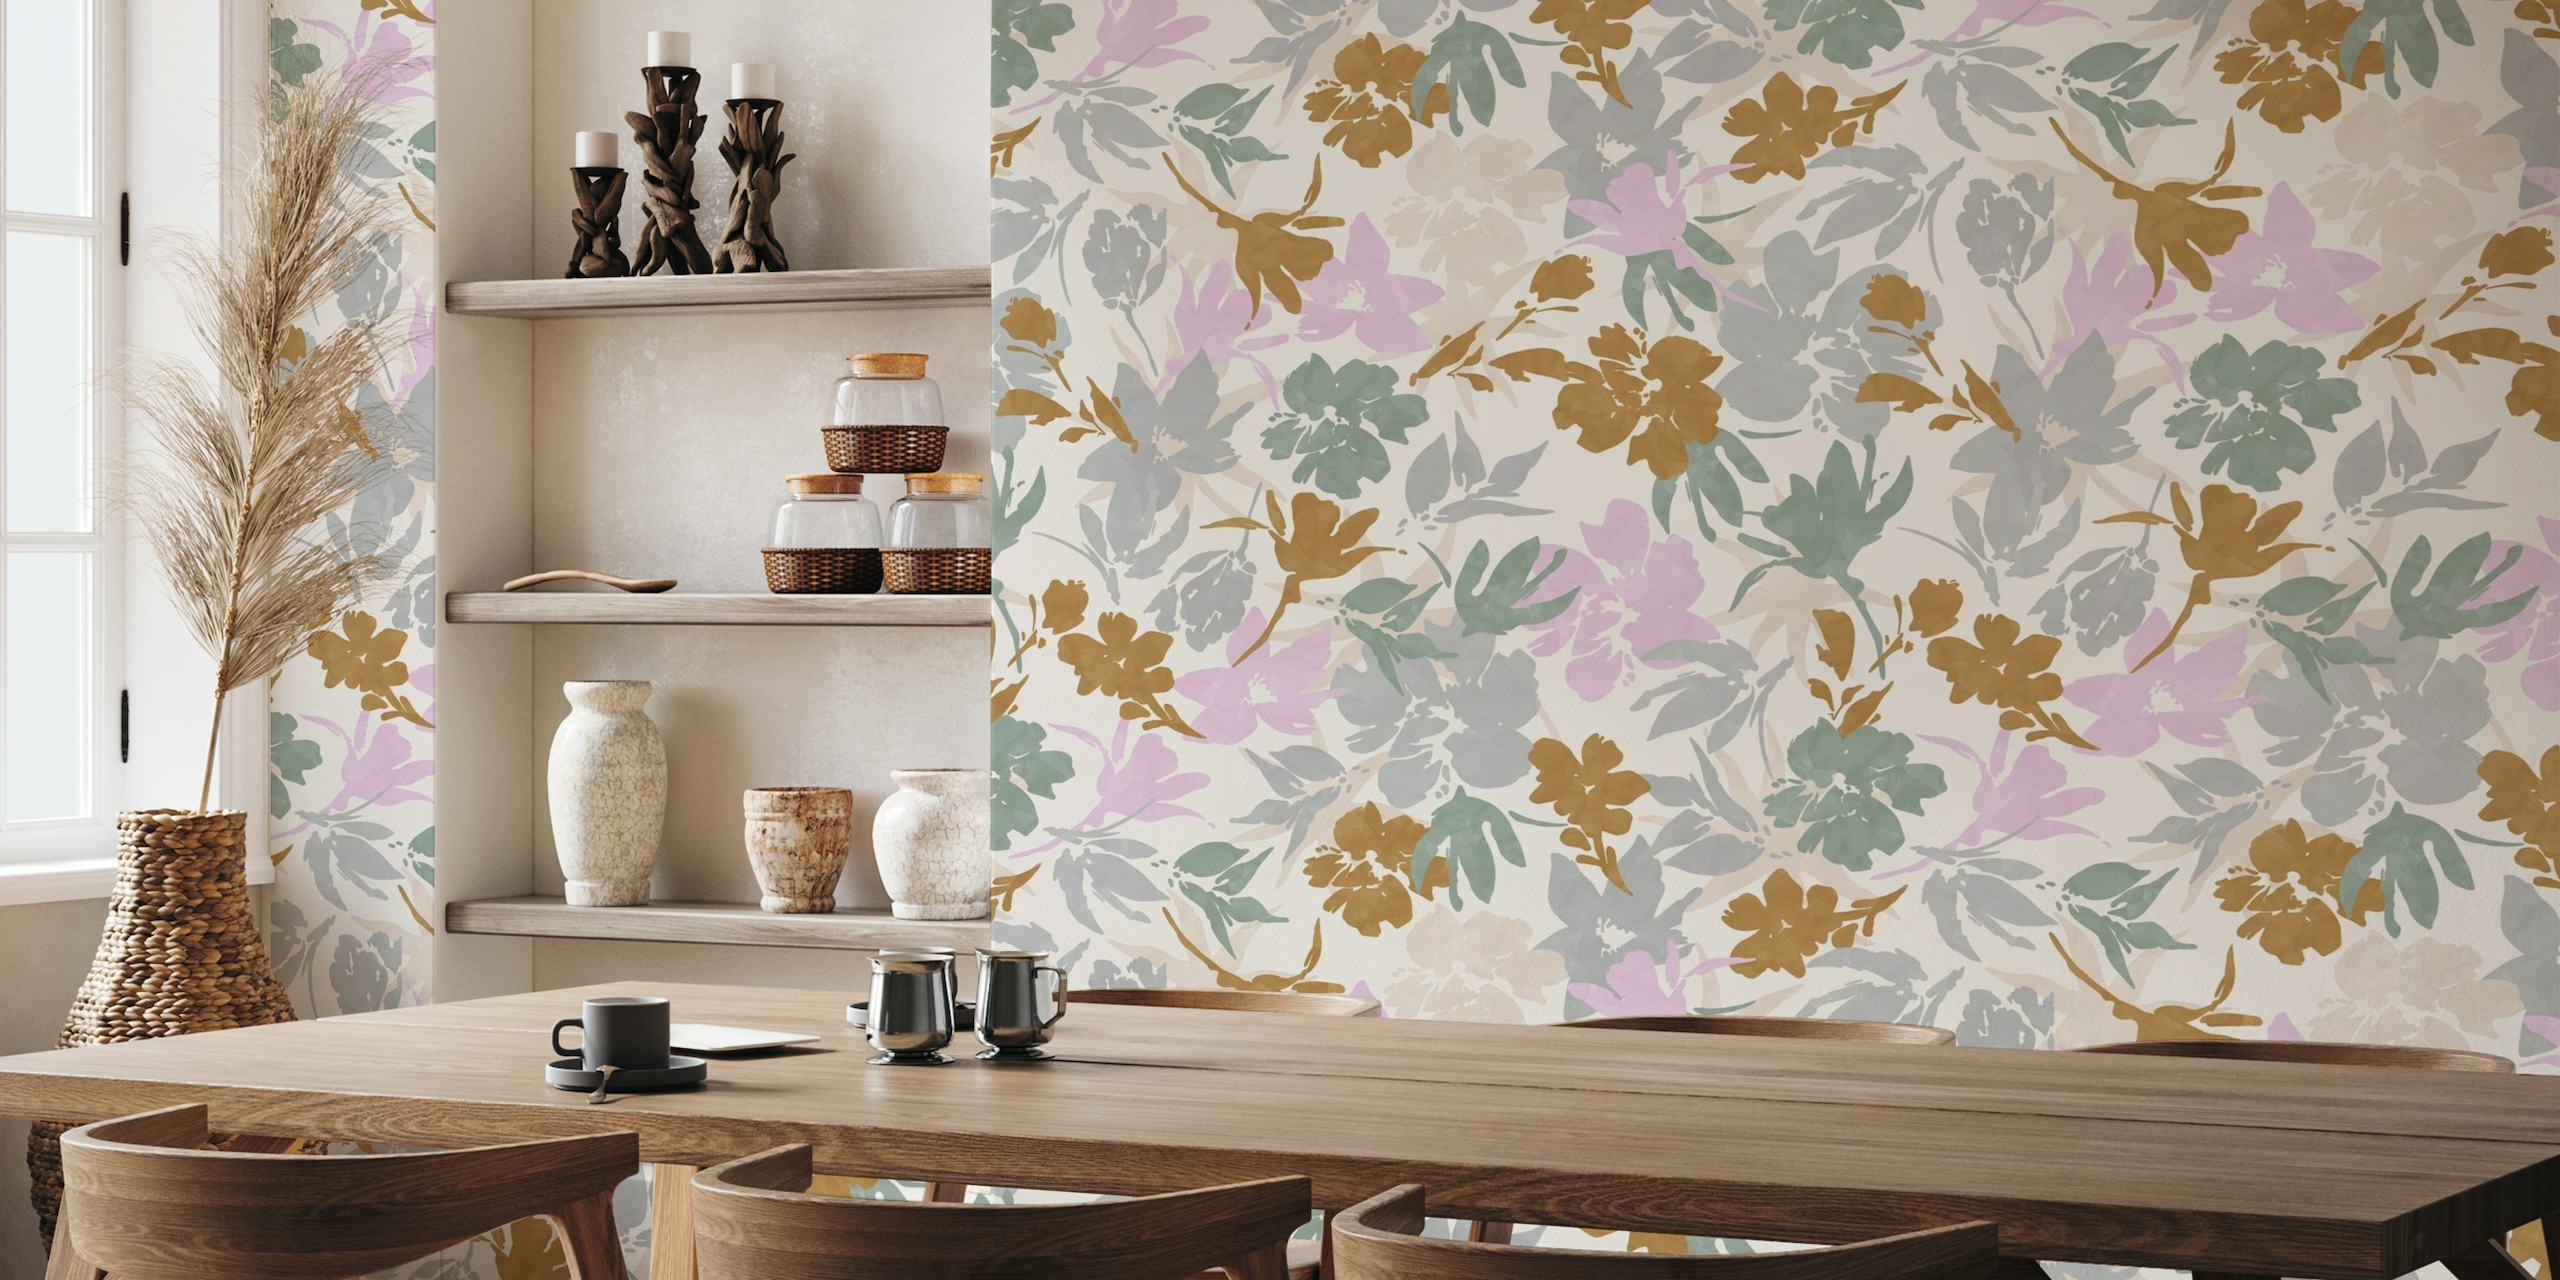 Mural de parede em cor pastel com um prado tranquilo com delicados padrões florais